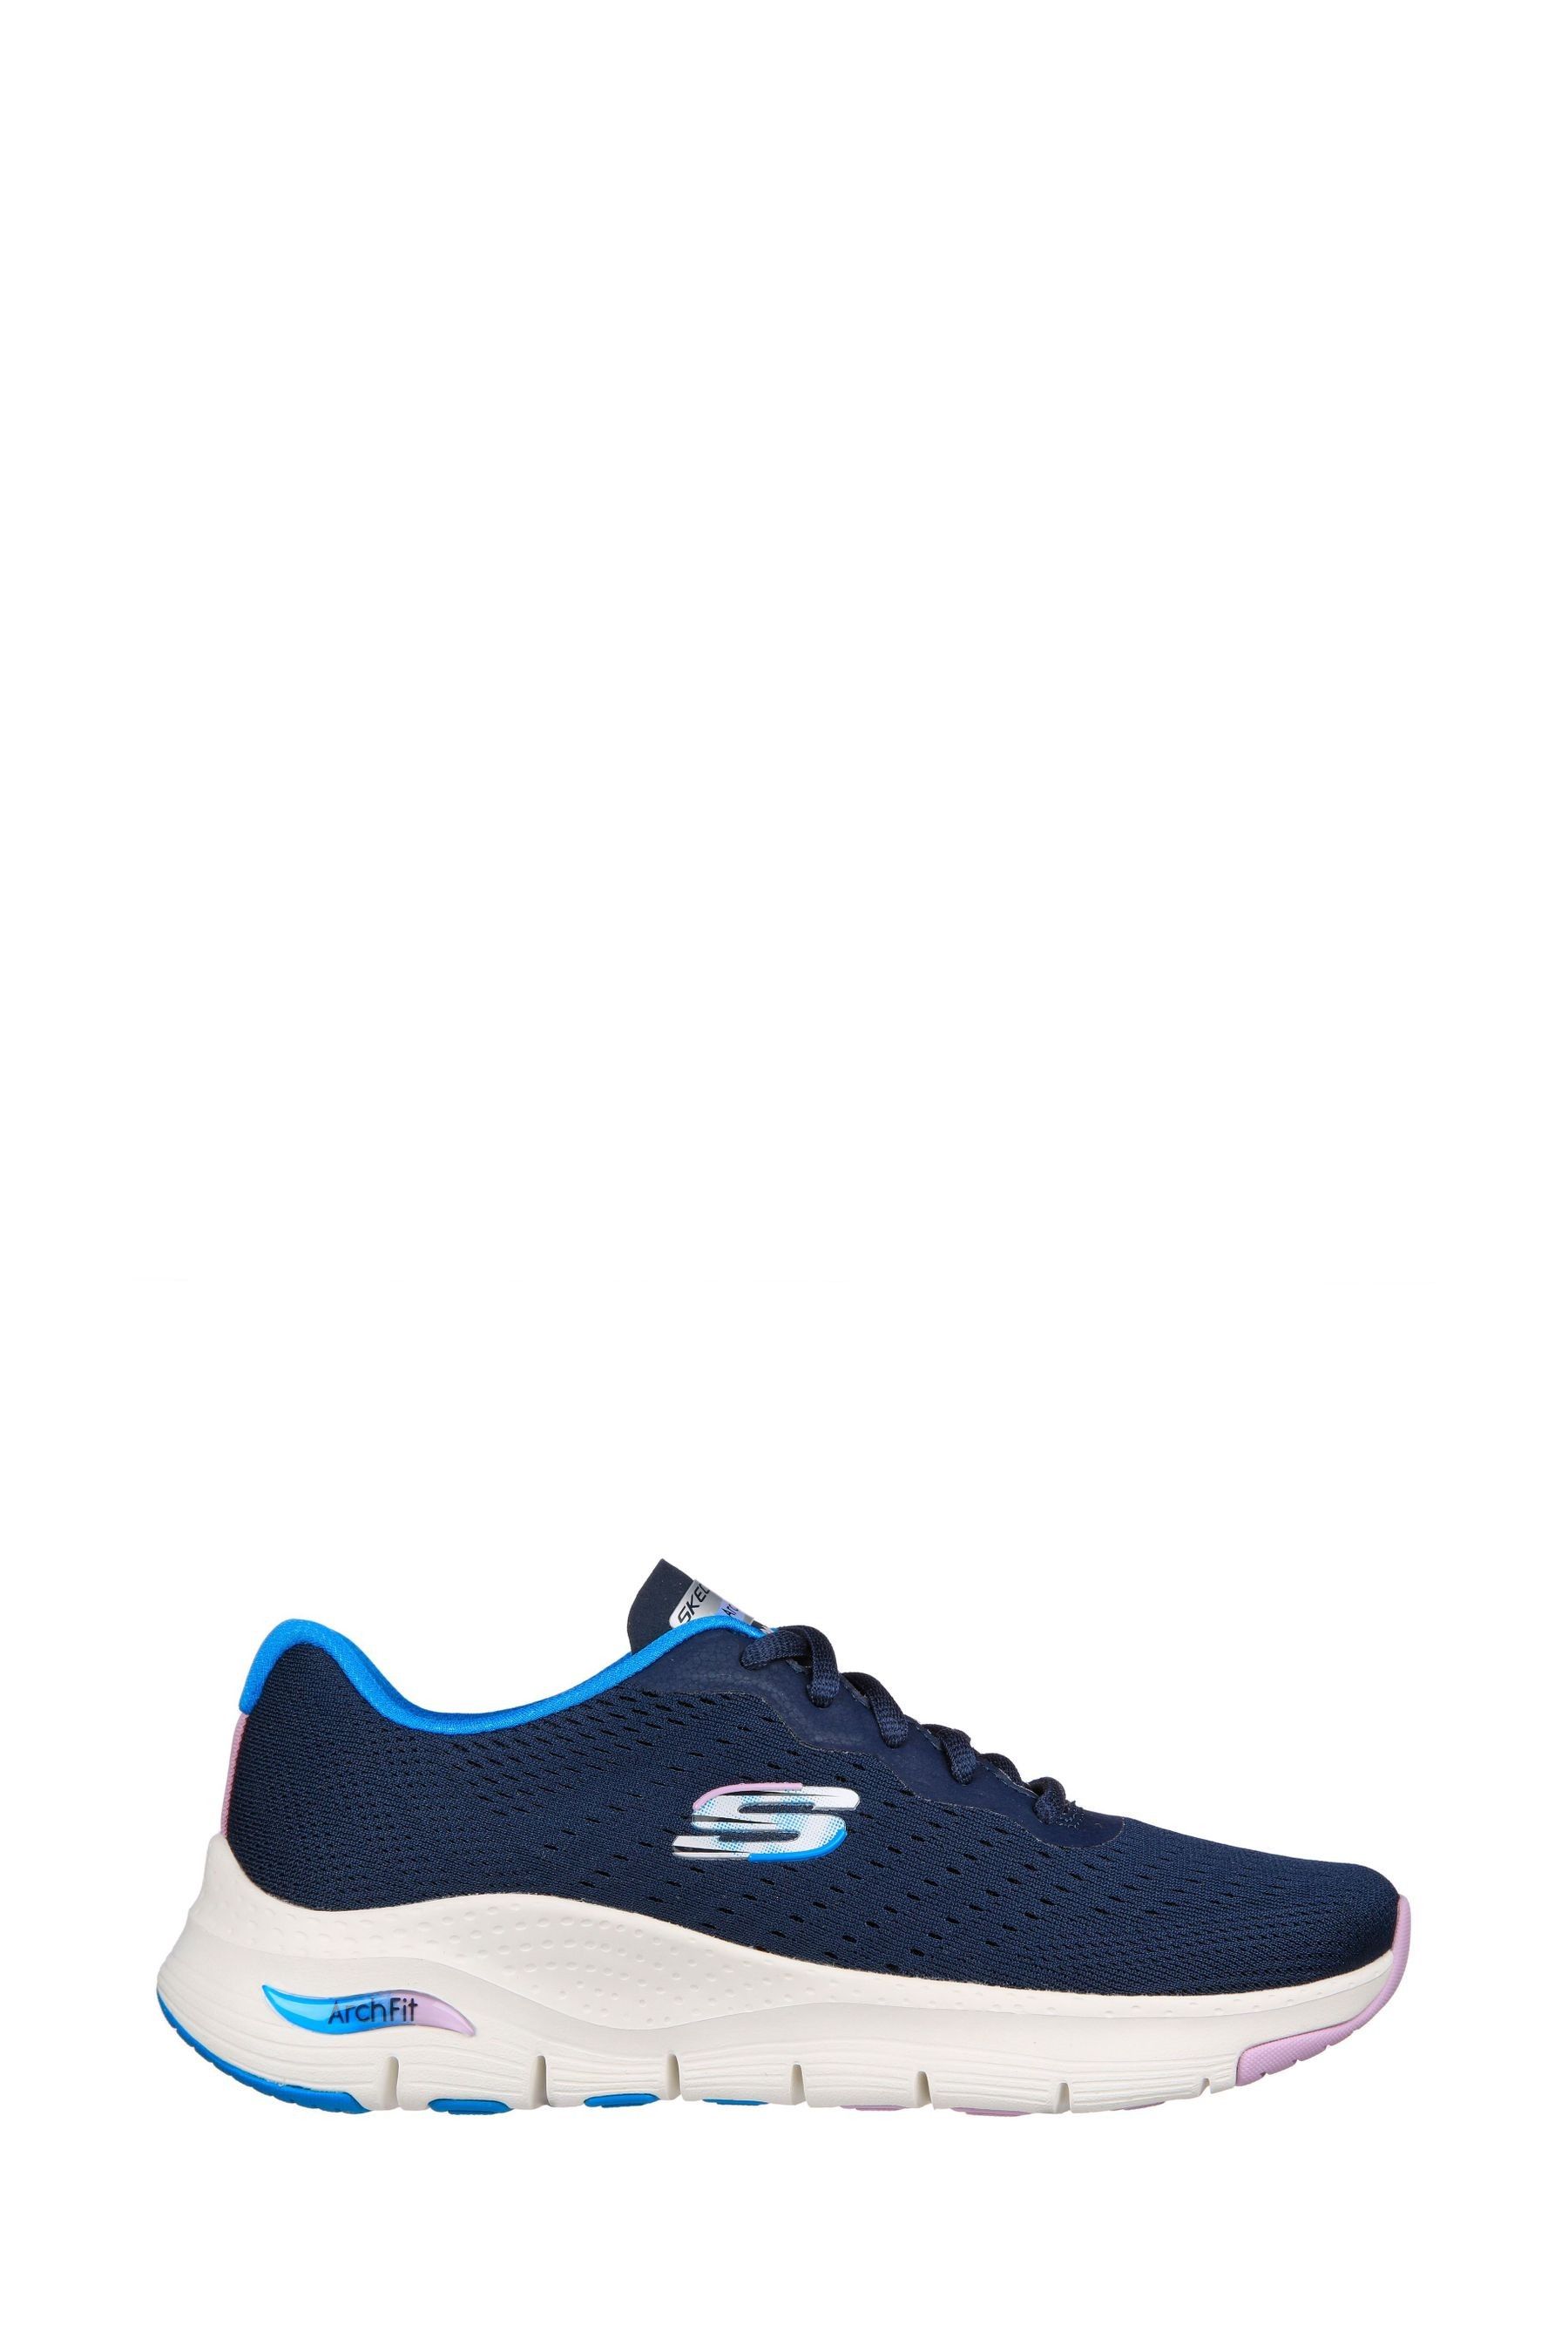 Спортивная обувь Arch Fit Infinity Cool Skechers, синий кроссовки skechers arch fit infinity cool trainer debenhams синий